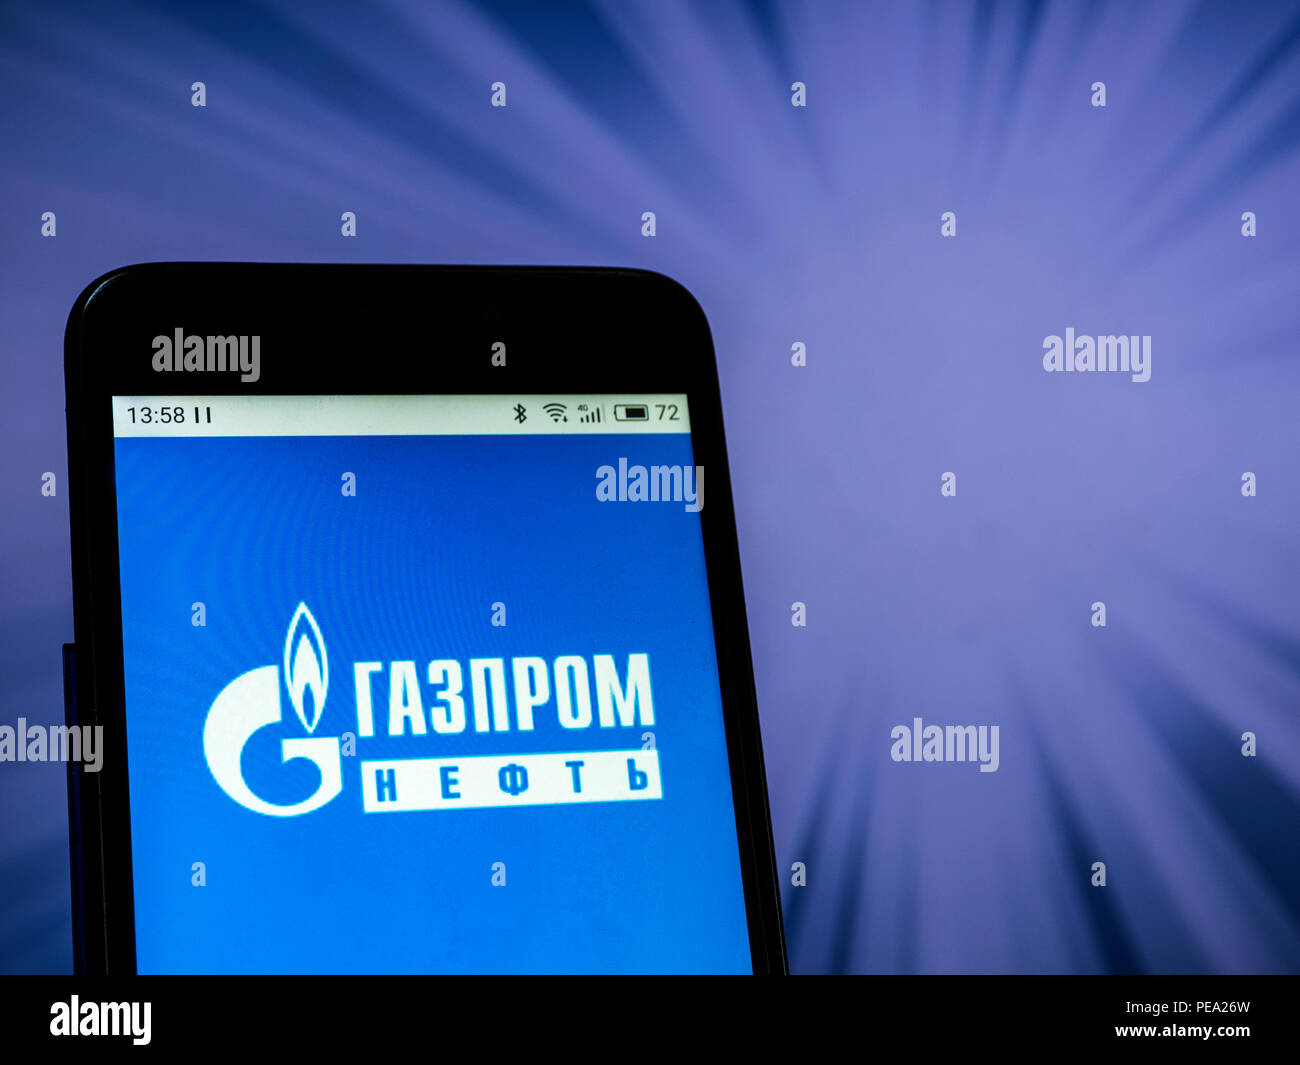 Gazprom neft (huile) logo vu affichée sur téléphone intelligent. Dans le cadre de l'introduction le 22 août de nouvelles sanctions contre la Russie dans le cas d'Skripal, actions inscrites dans la liste des entreprises a fortement baissé. Banque D'Images